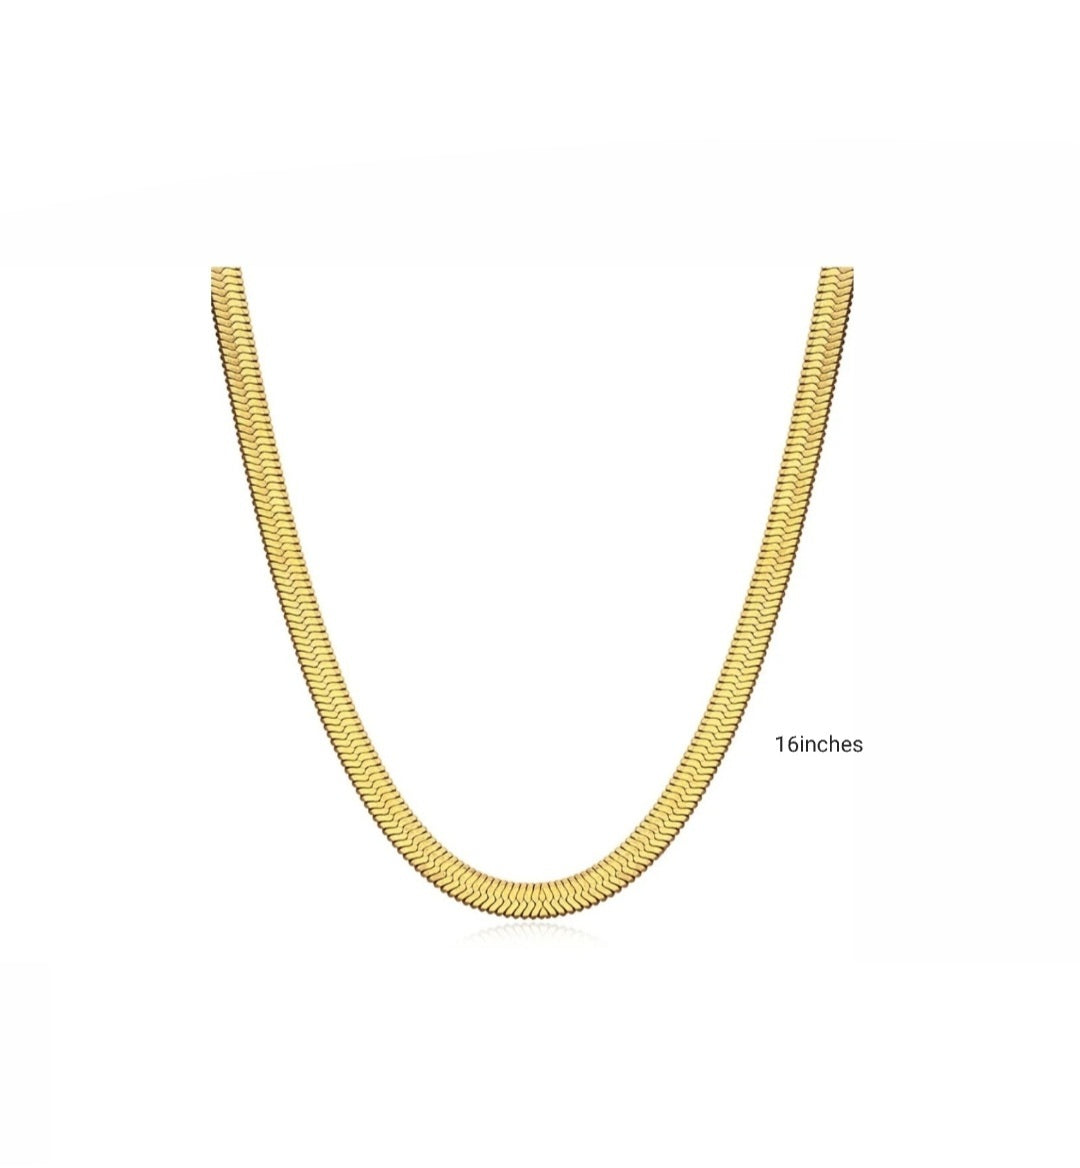 Snake Necklace - Gold